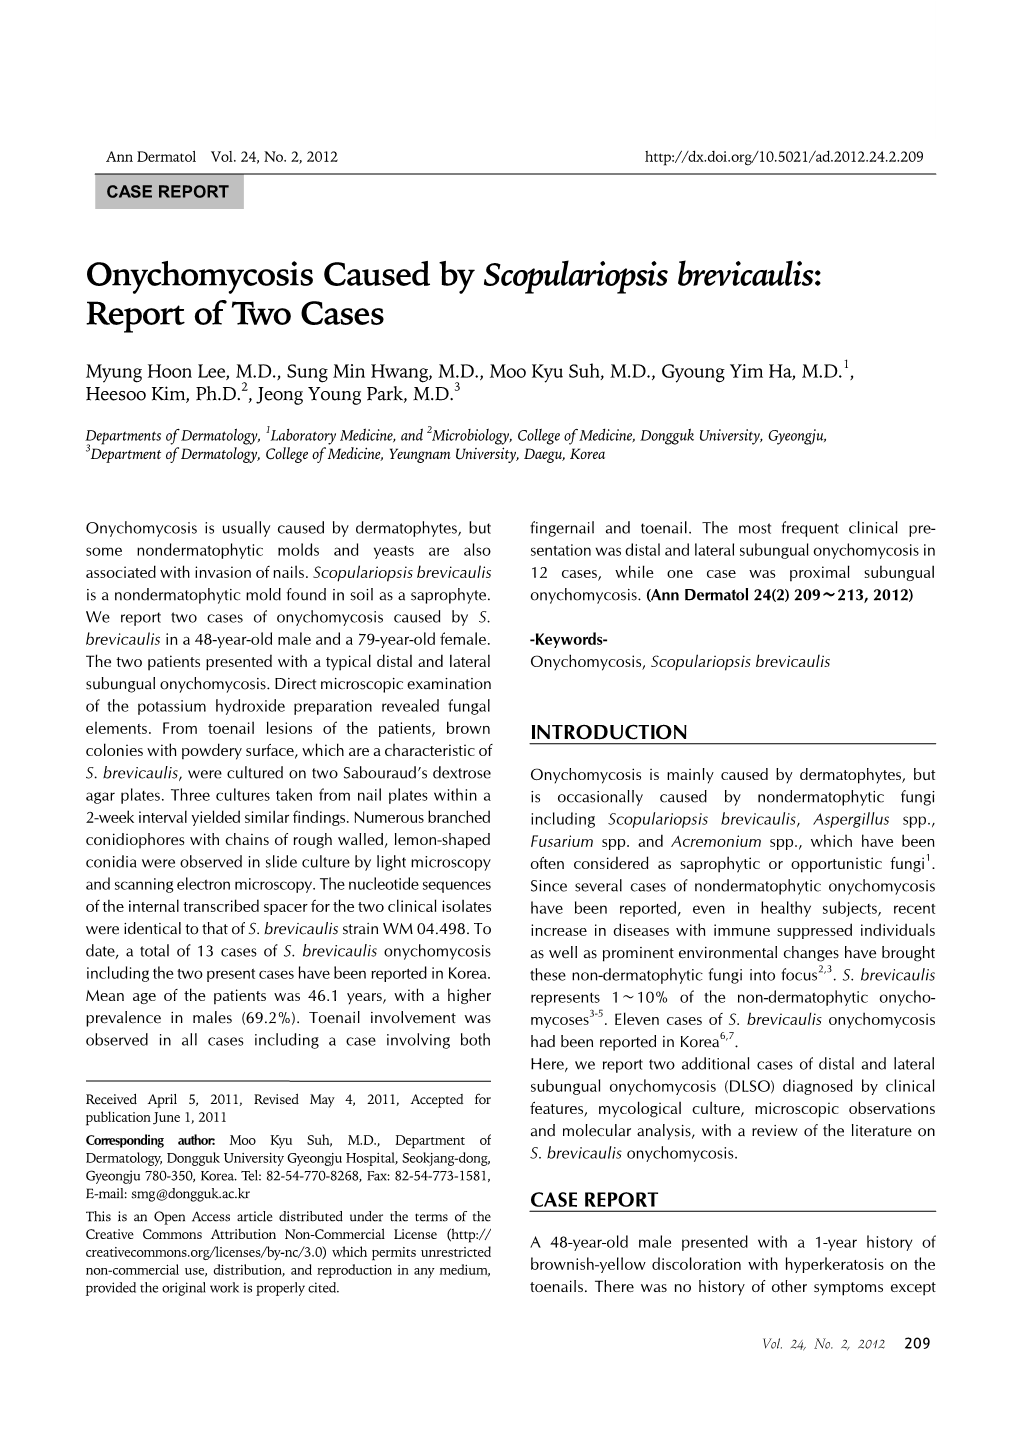 Onychomycosis Caused by Scopulariopsis Brevicaulis Ann Dermatol Vol